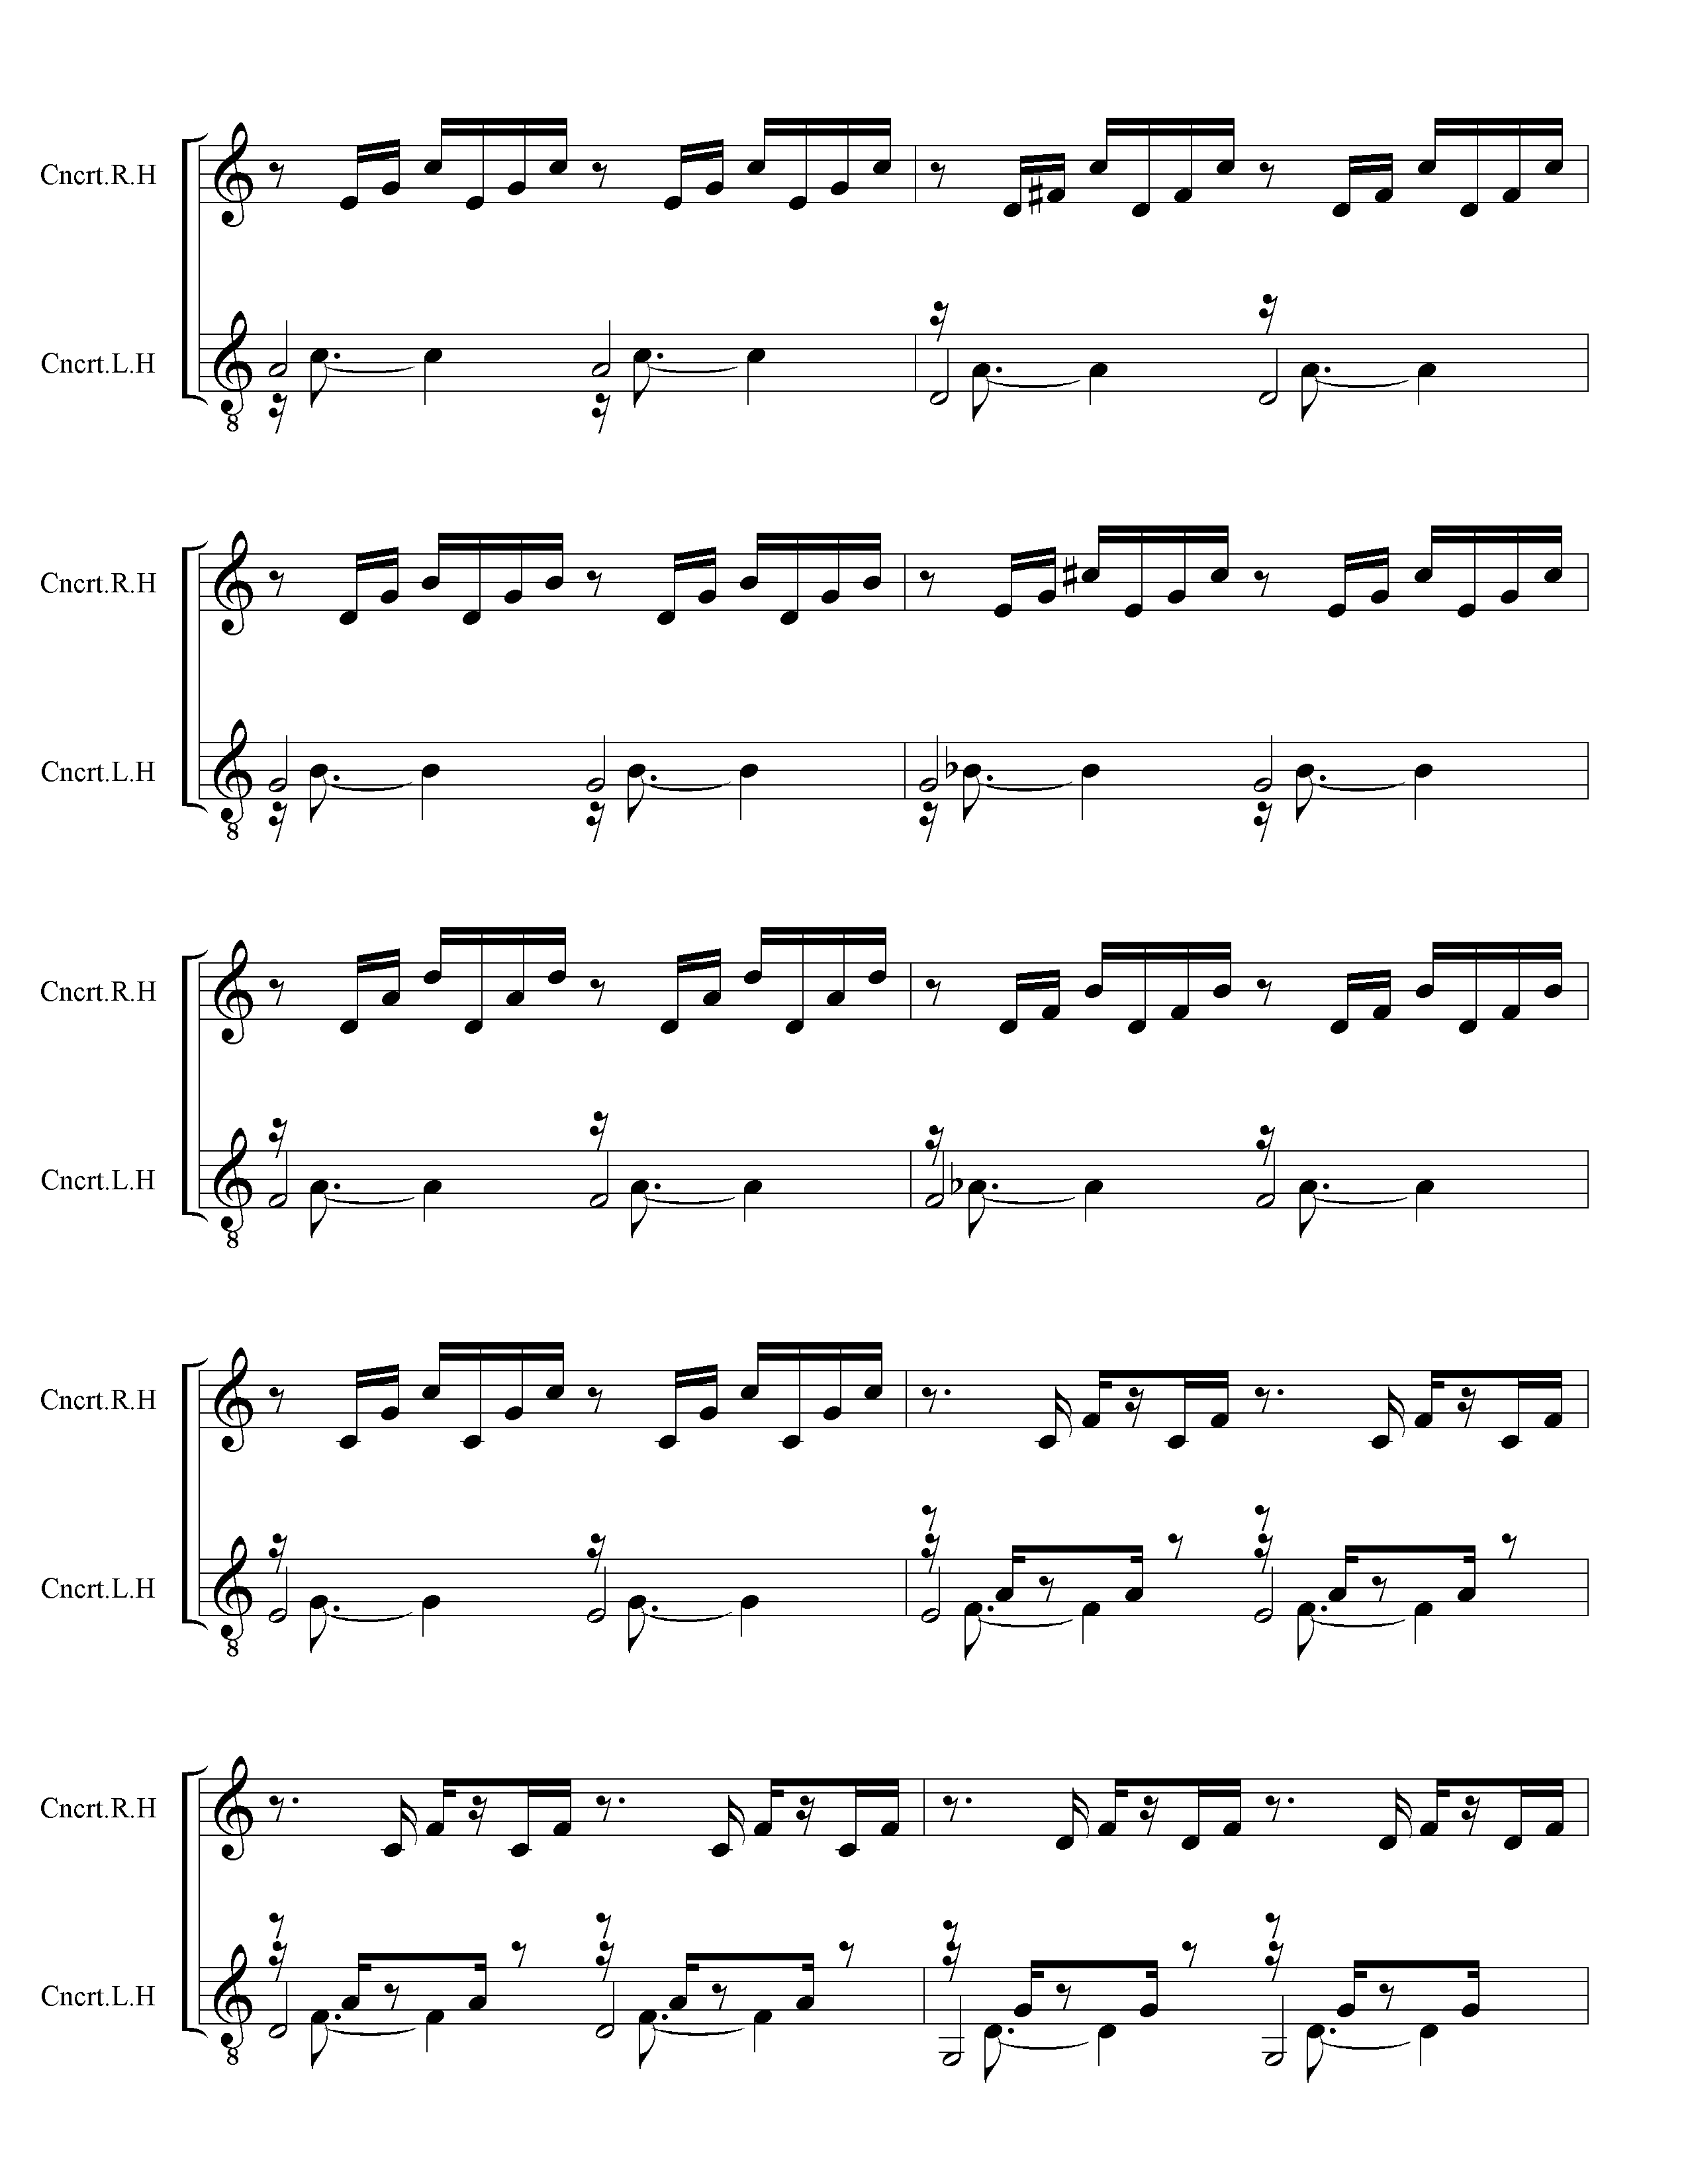 Page 2 (of 4) of J. S. Back Prelude 1 in C Major - Hayden Duet Arrangment